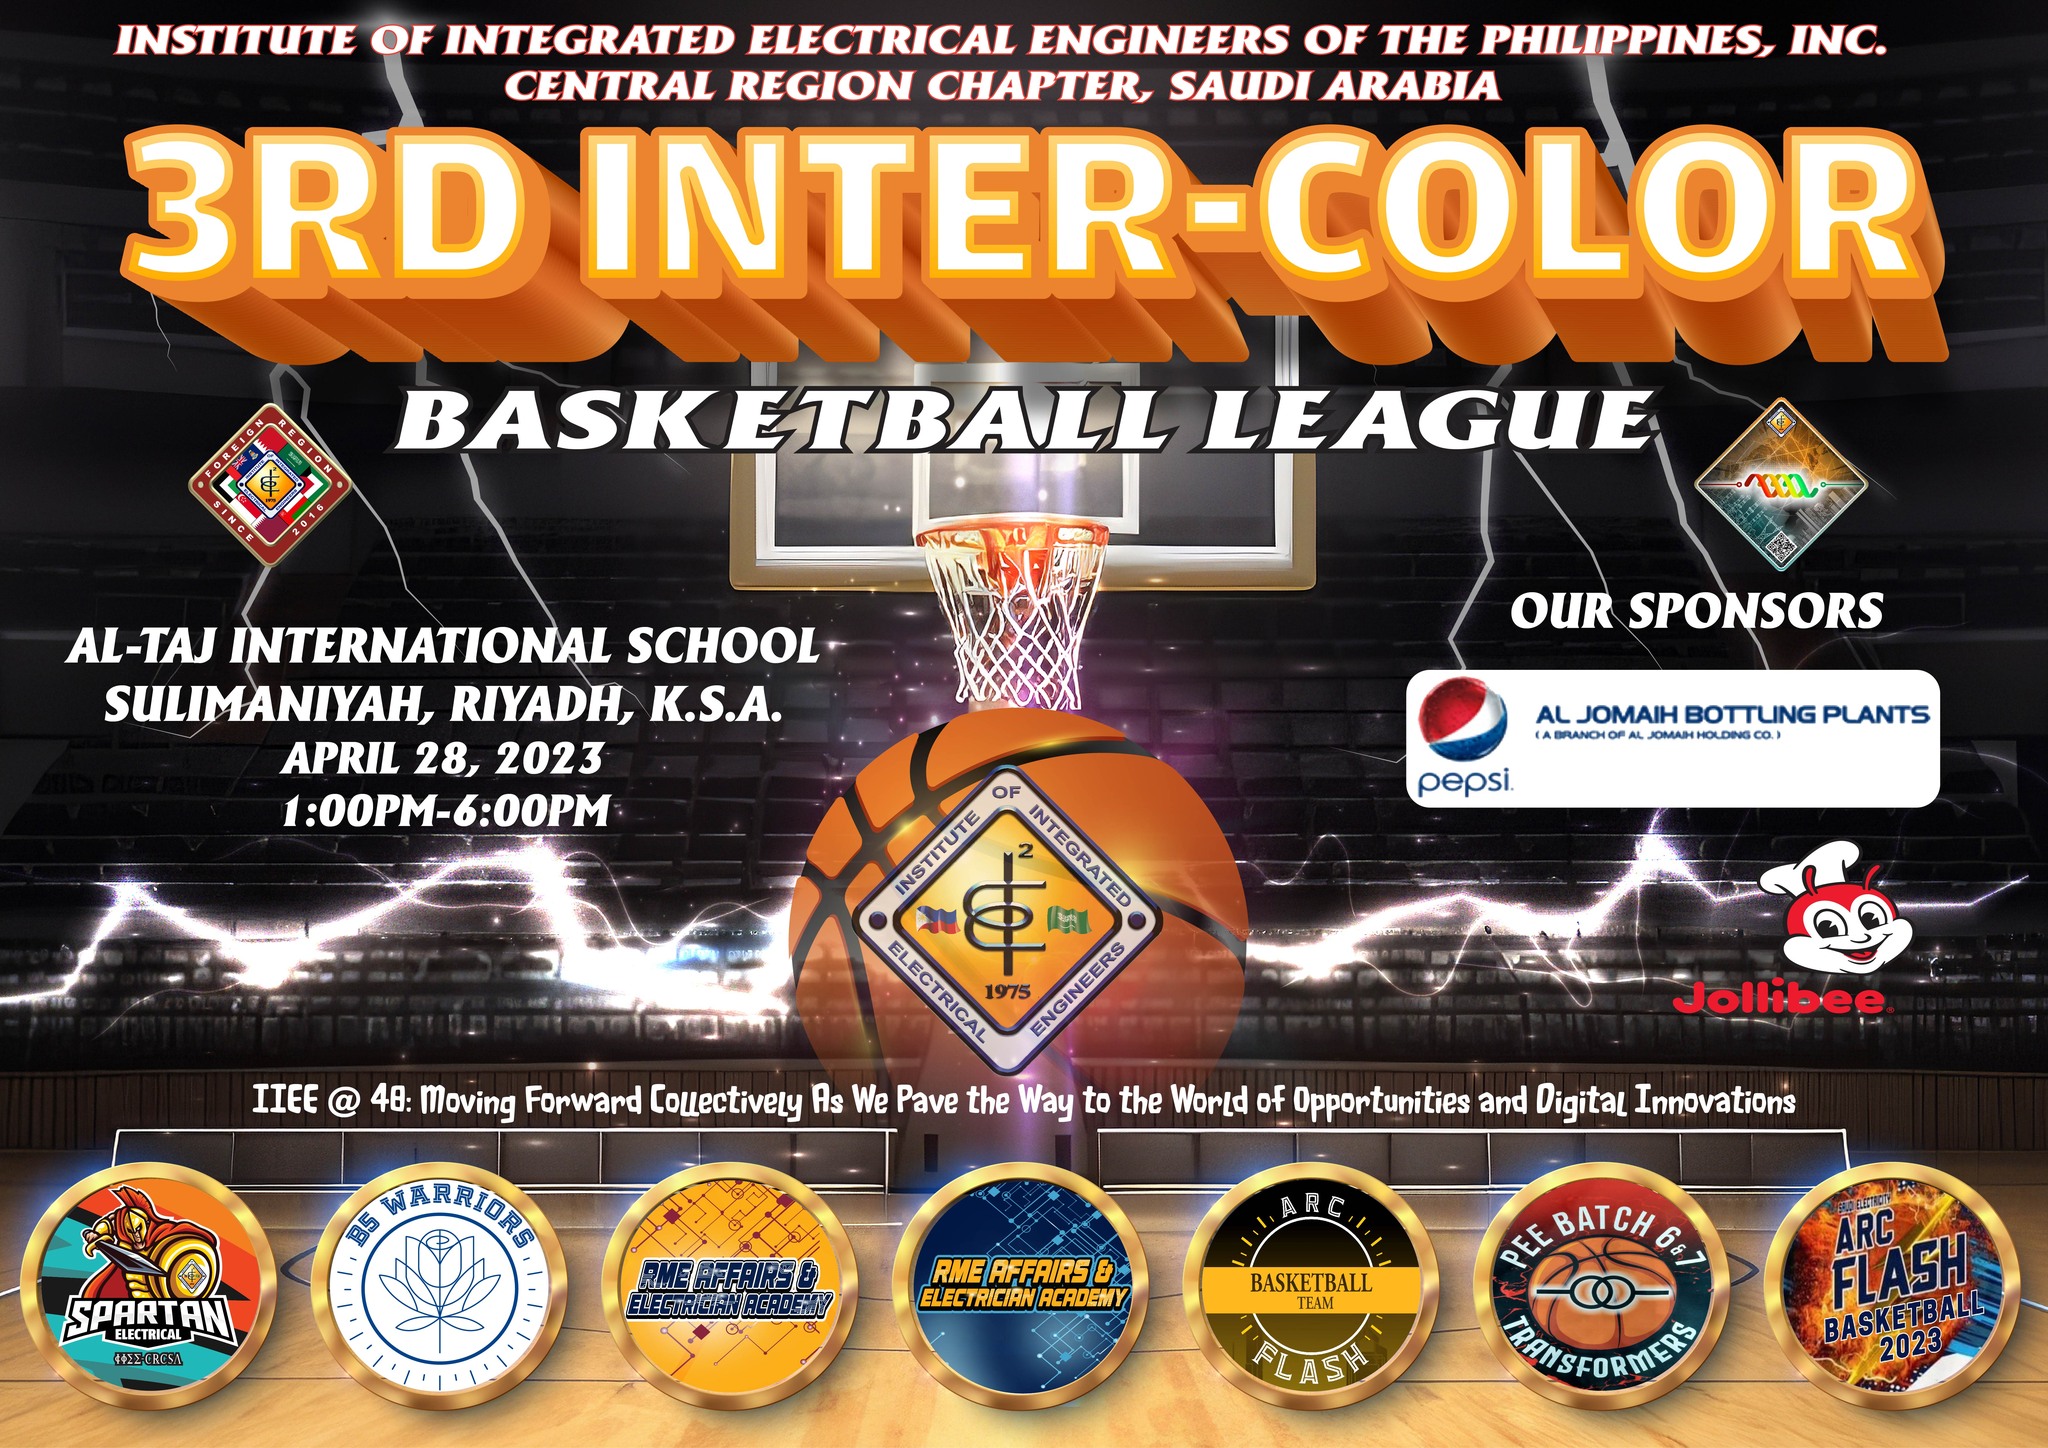 3rd Inter-color Basketball League 2023